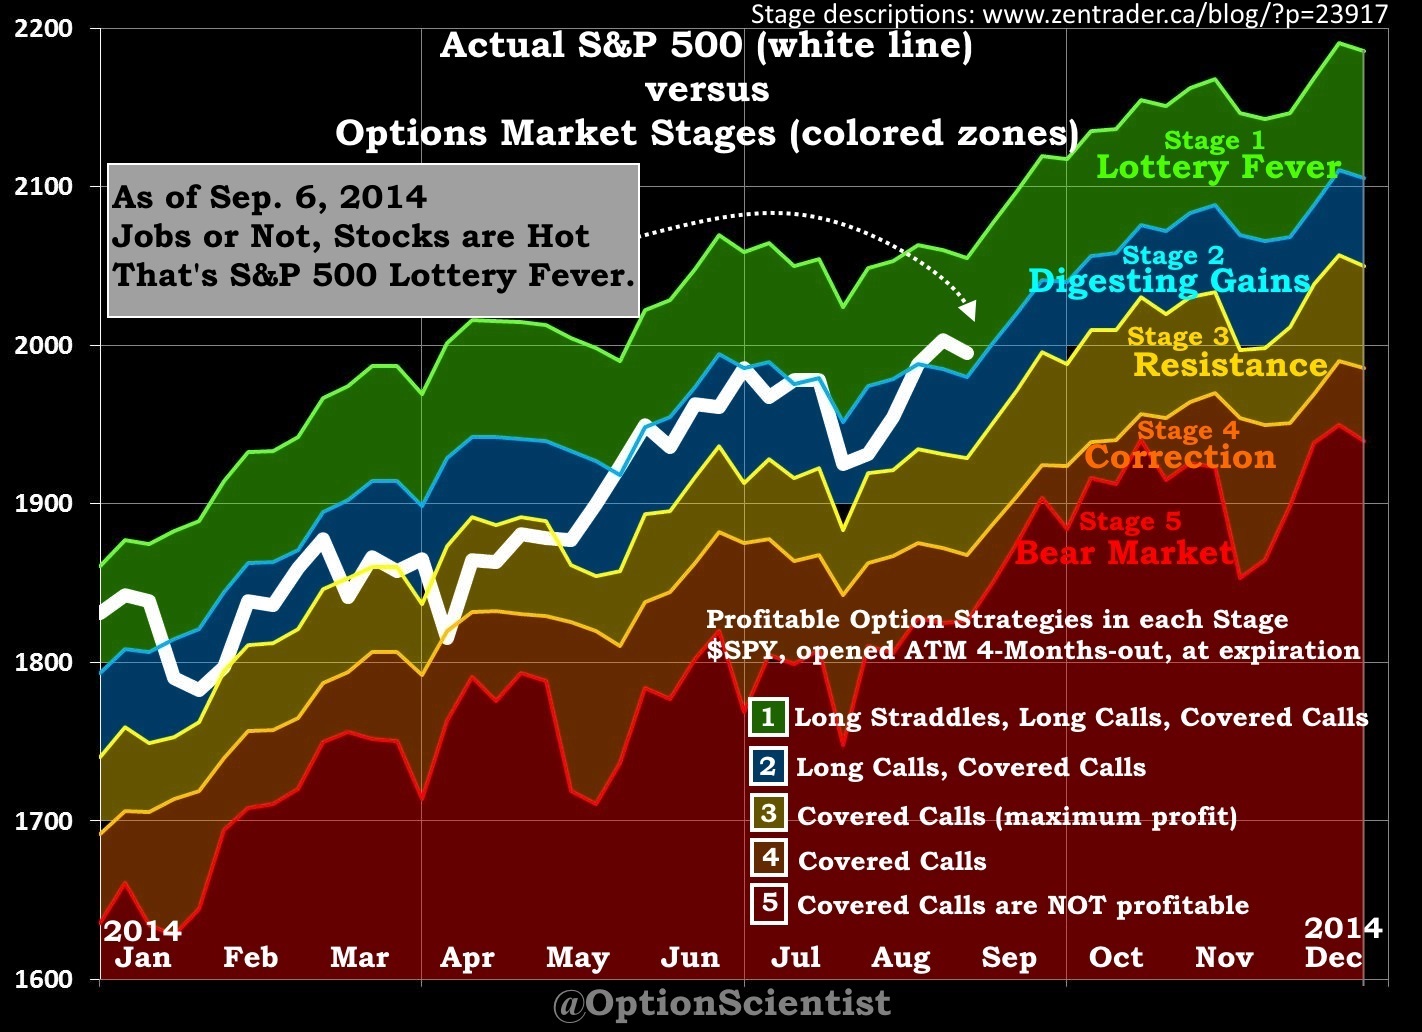 Actual S&P vs. Options Market Stages